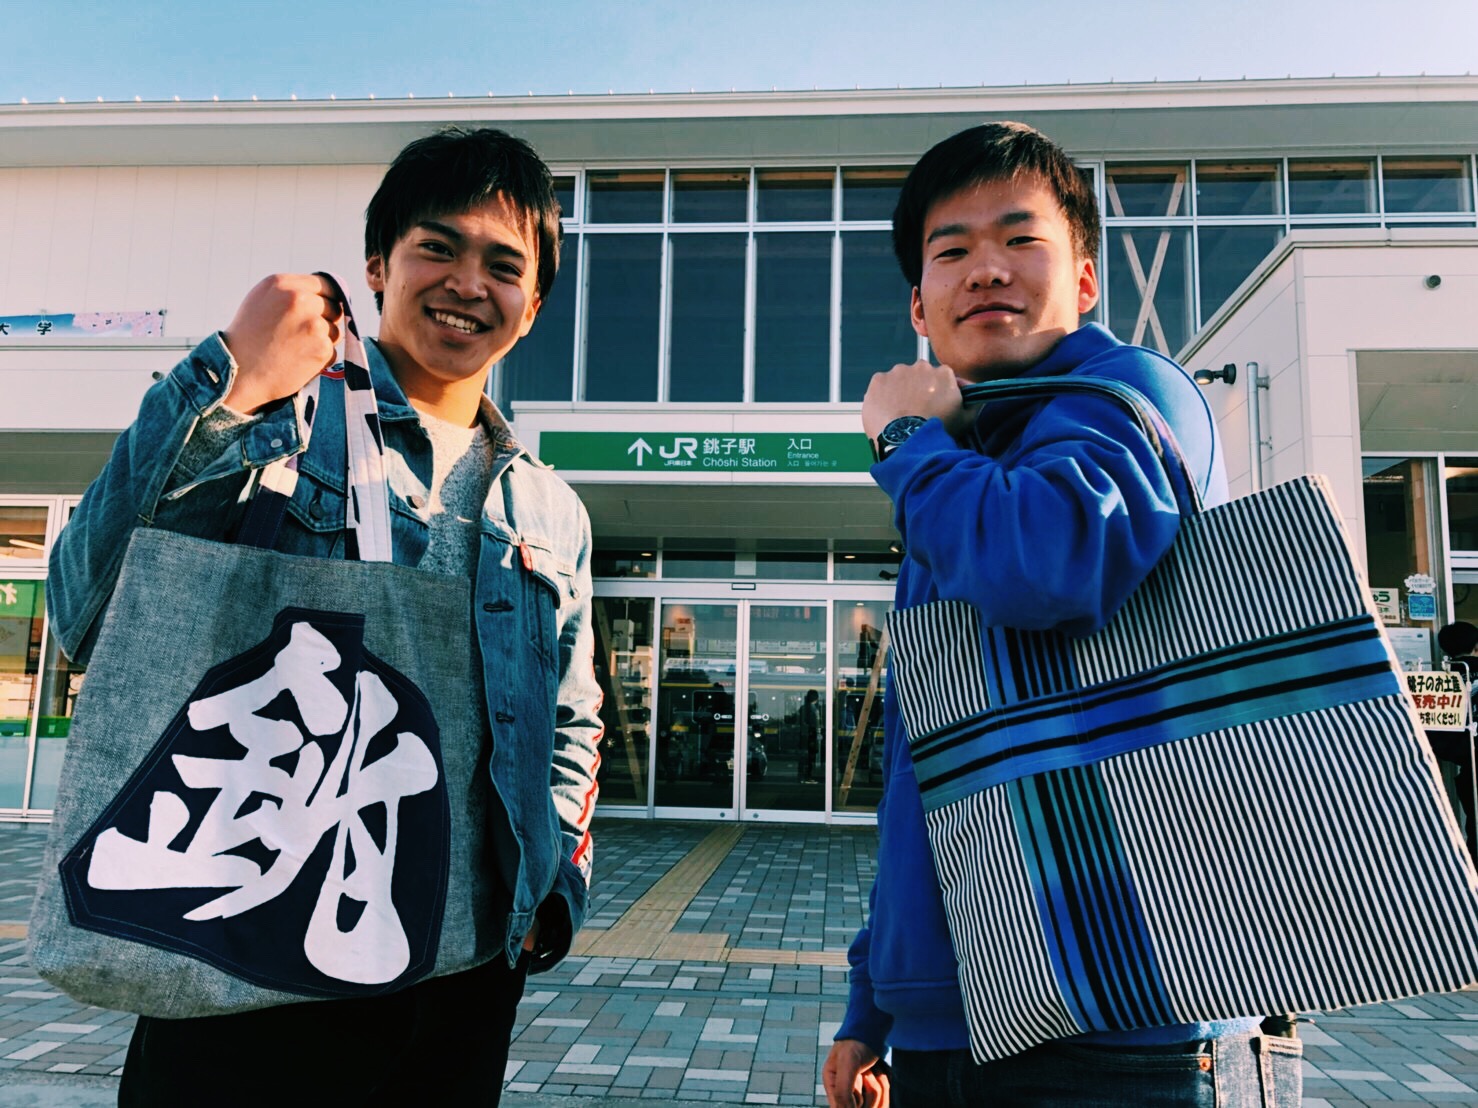 あと3年で 財政破綻 すると言われる銚子市を観光大使と一緒に観光してきた Jisedai